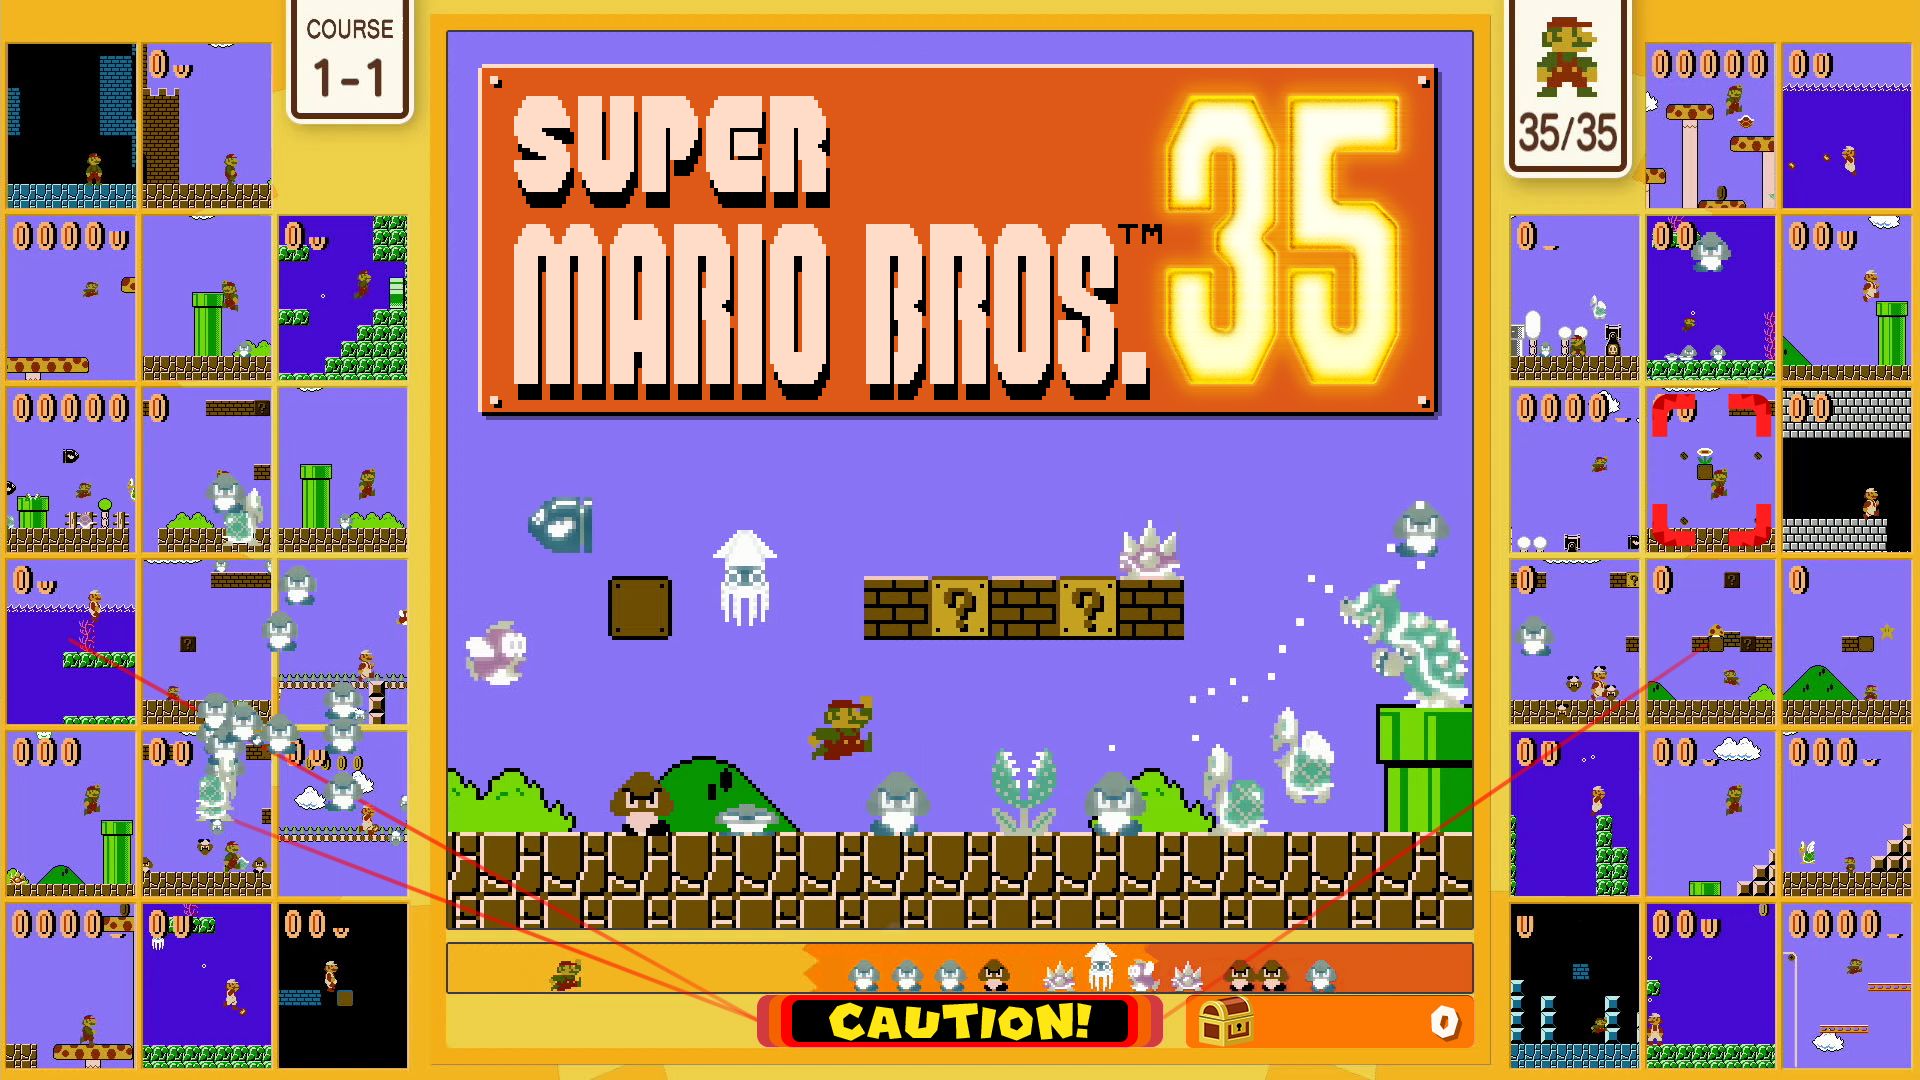 Super Марио Bros. 35